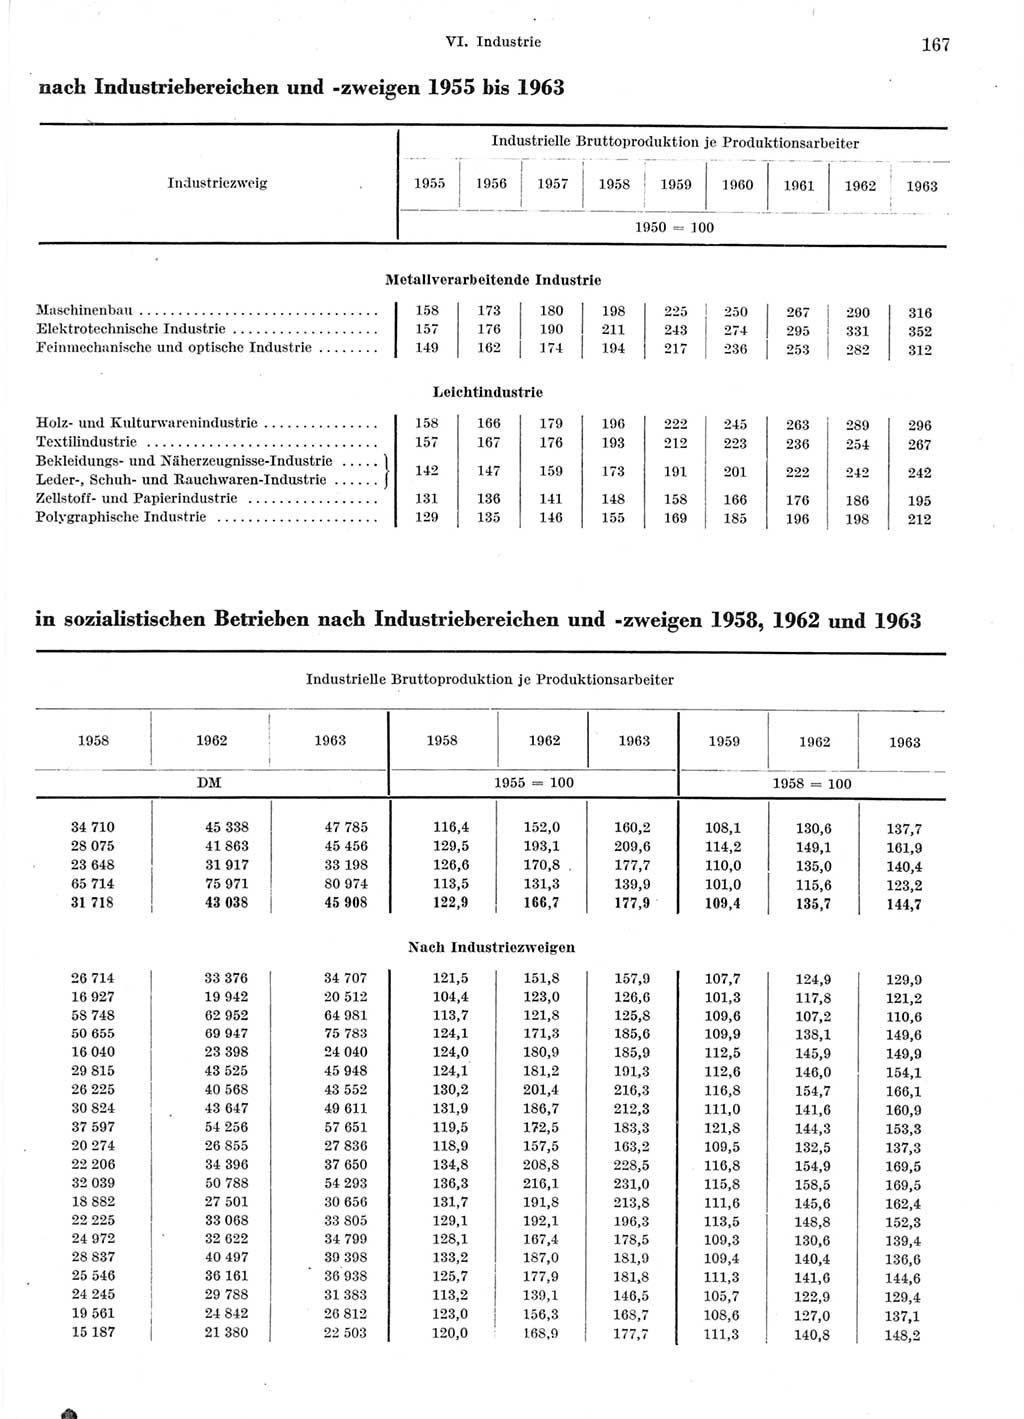 Statistisches Jahrbuch der Deutschen Demokratischen Republik (DDR) 1964, Seite 167 (Stat. Jb. DDR 1964, S. 167)